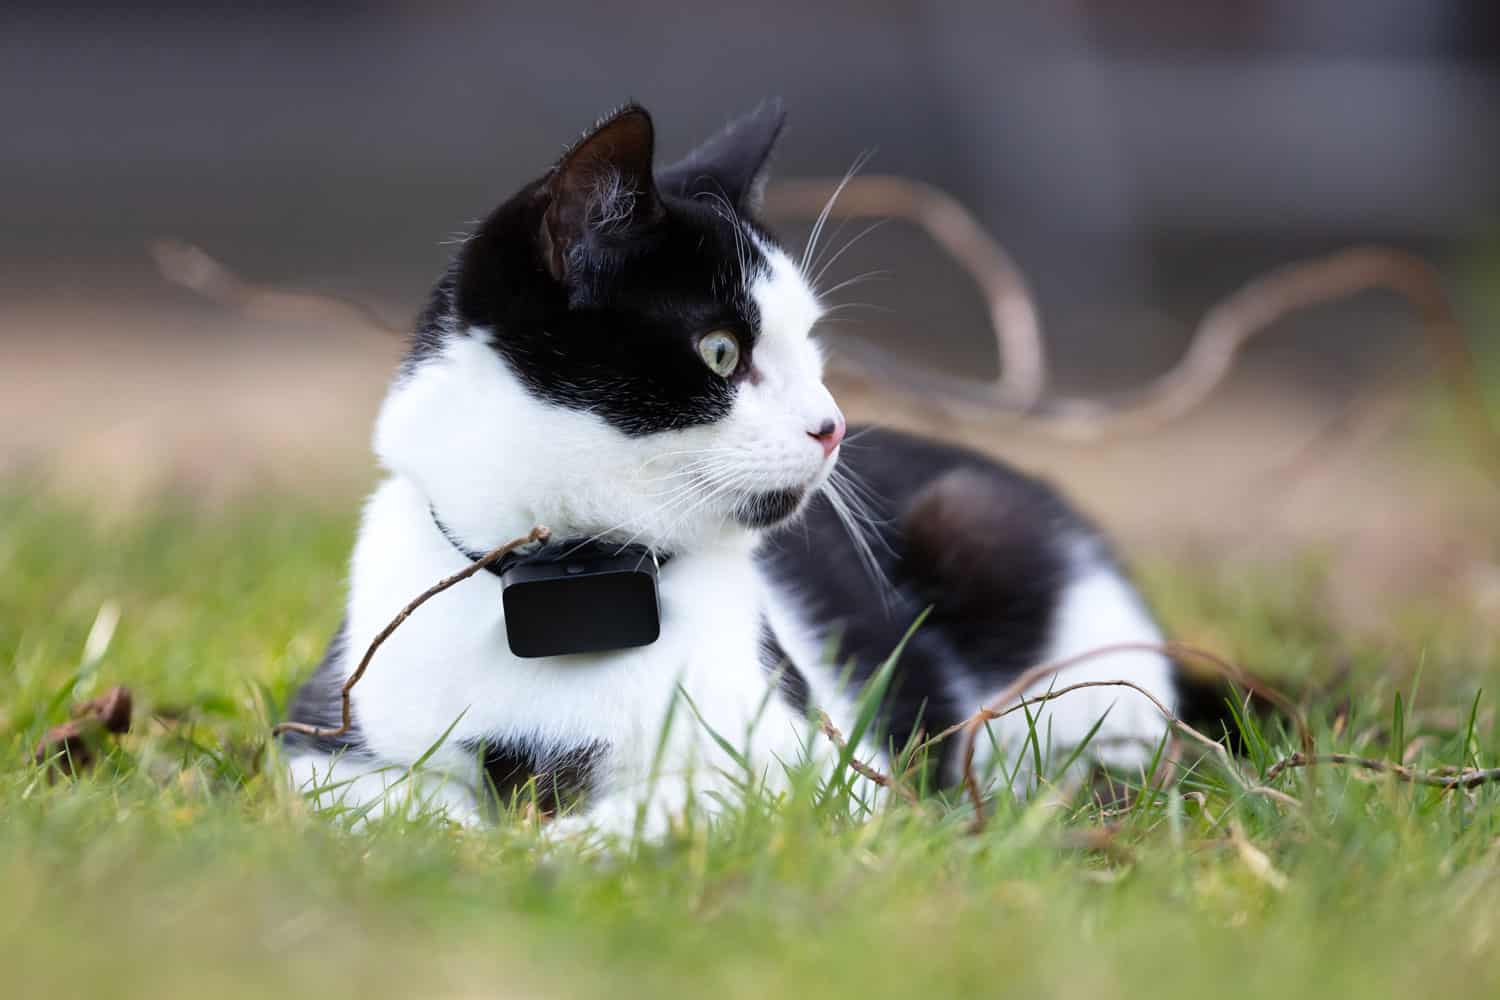 A cute tabby cat wearing a tracker